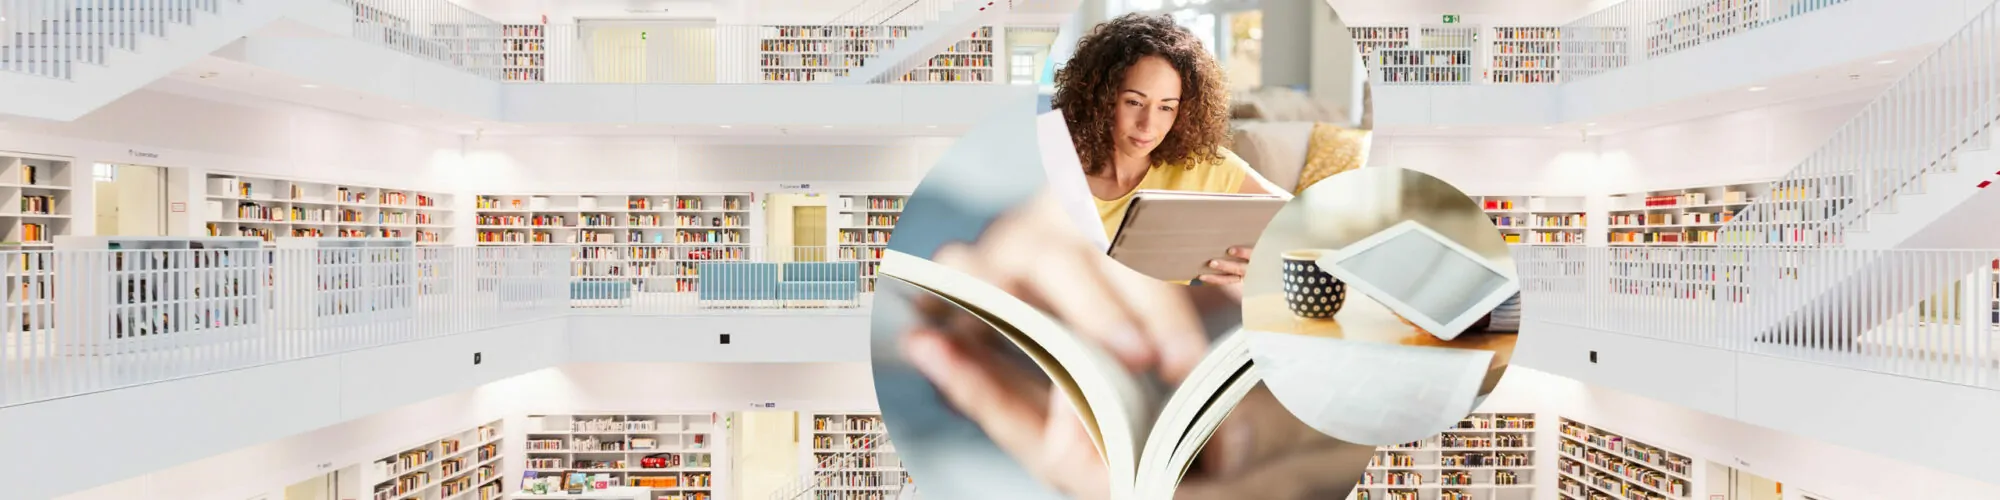 Imagem de uma mulher a ler, ao lado de uma imagem de um tablet e, por trás, imagens de um livro e de uma biblioteca, valantic Download Center